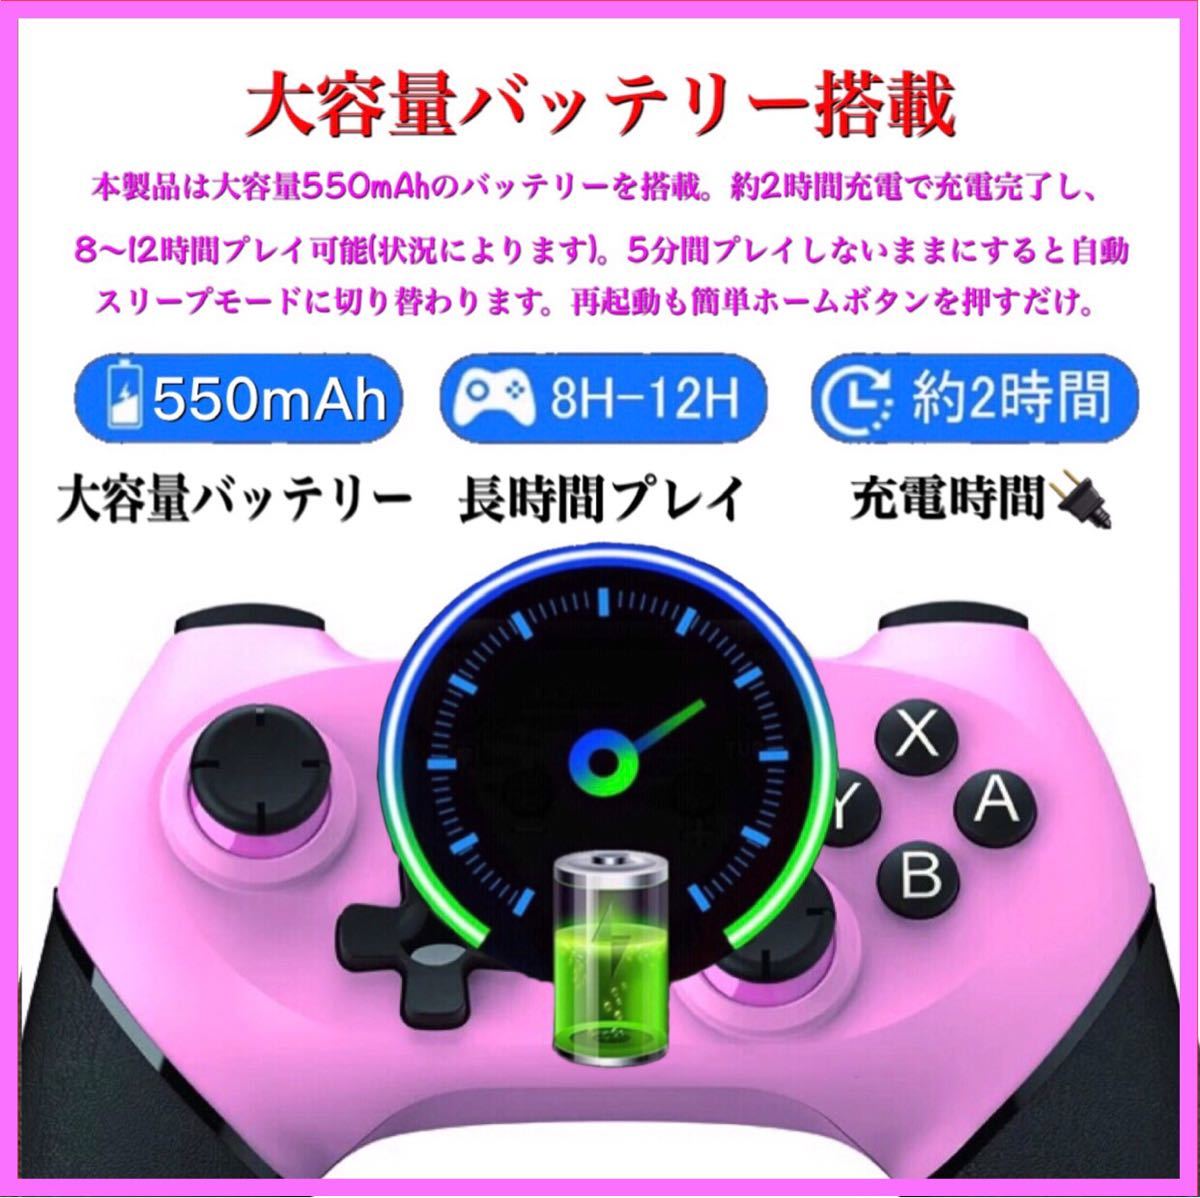 ピンク新品箱付き送料無料Switch コントローラーワイヤレス任天堂スイッチプロコン